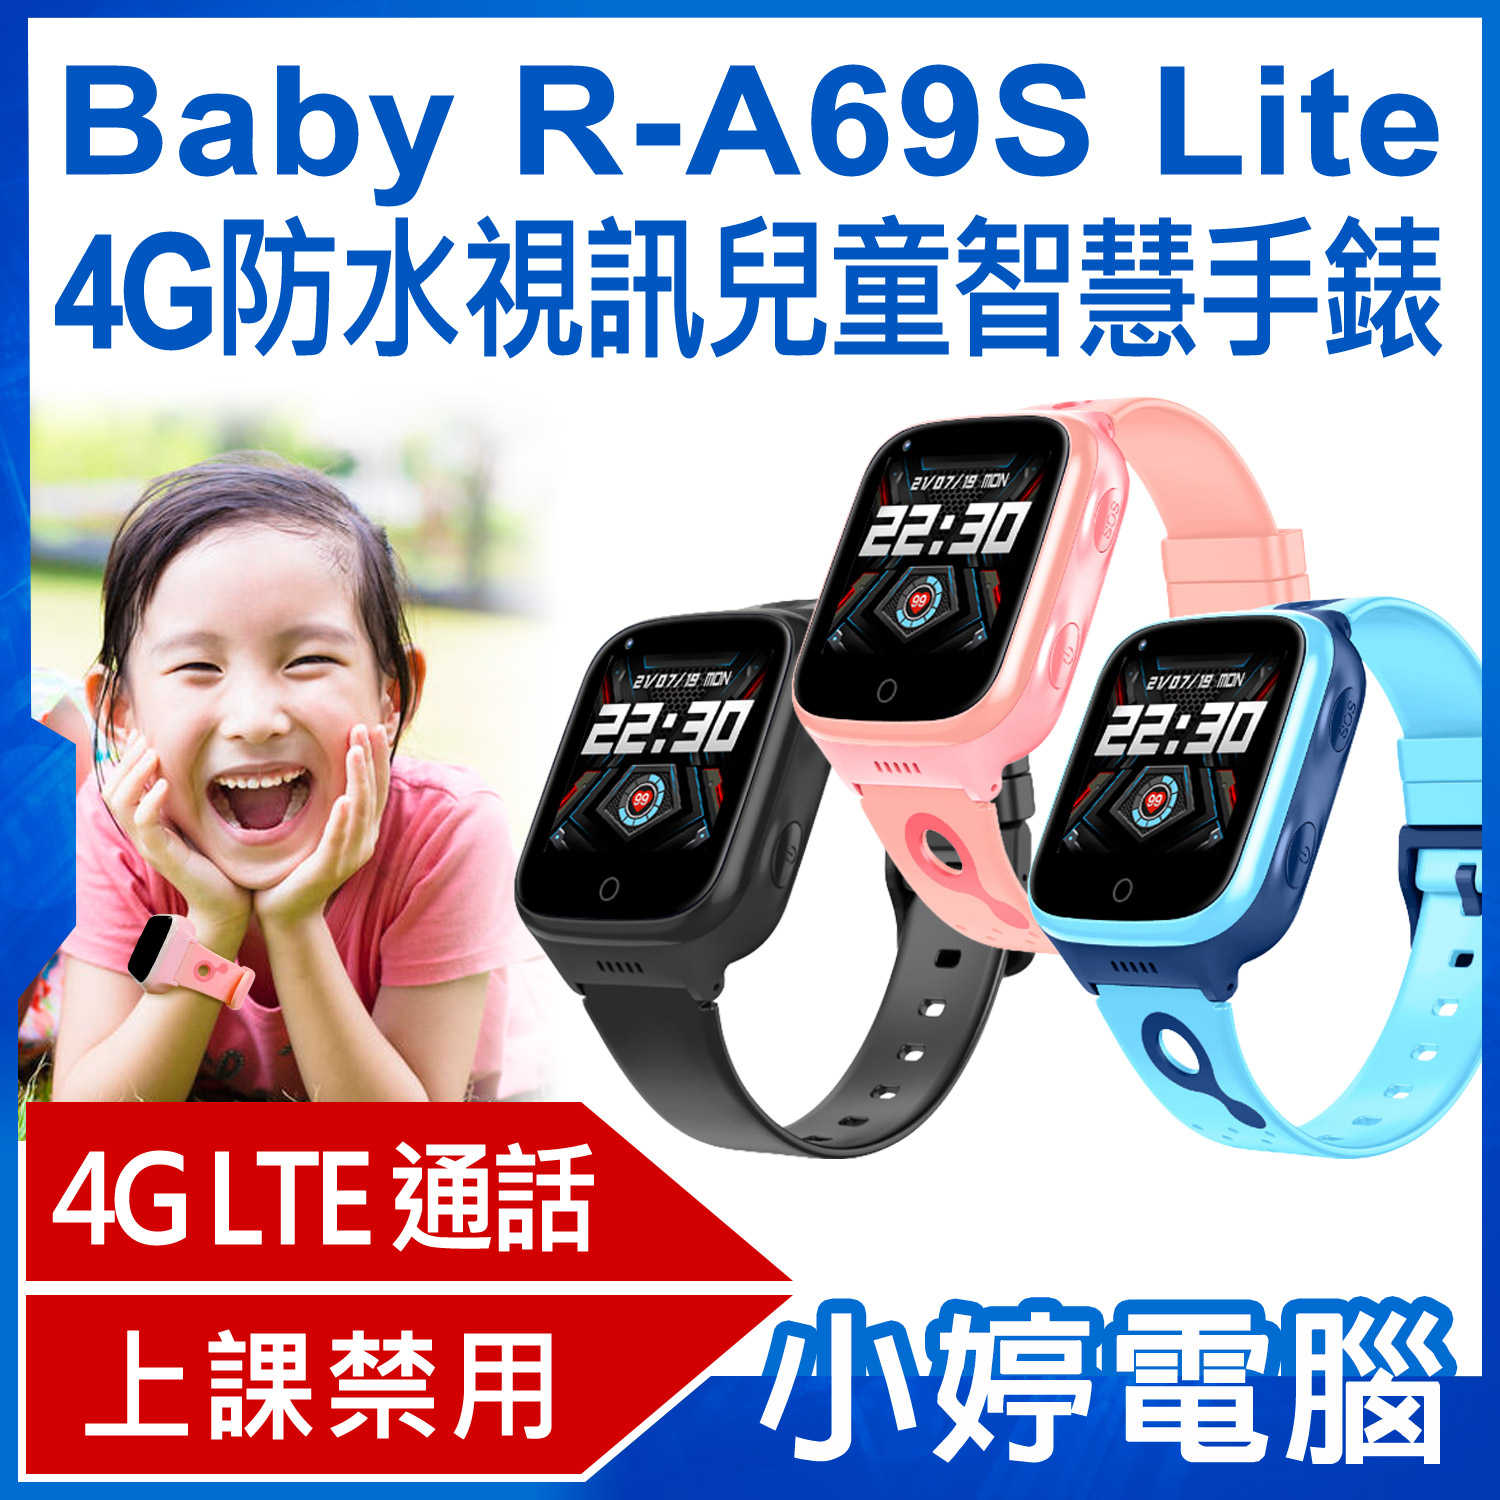 【小婷電腦】Baby R-A69S Lite 4G防水視訊兒童智慧手錶 IP67防水 精準定位 SOS